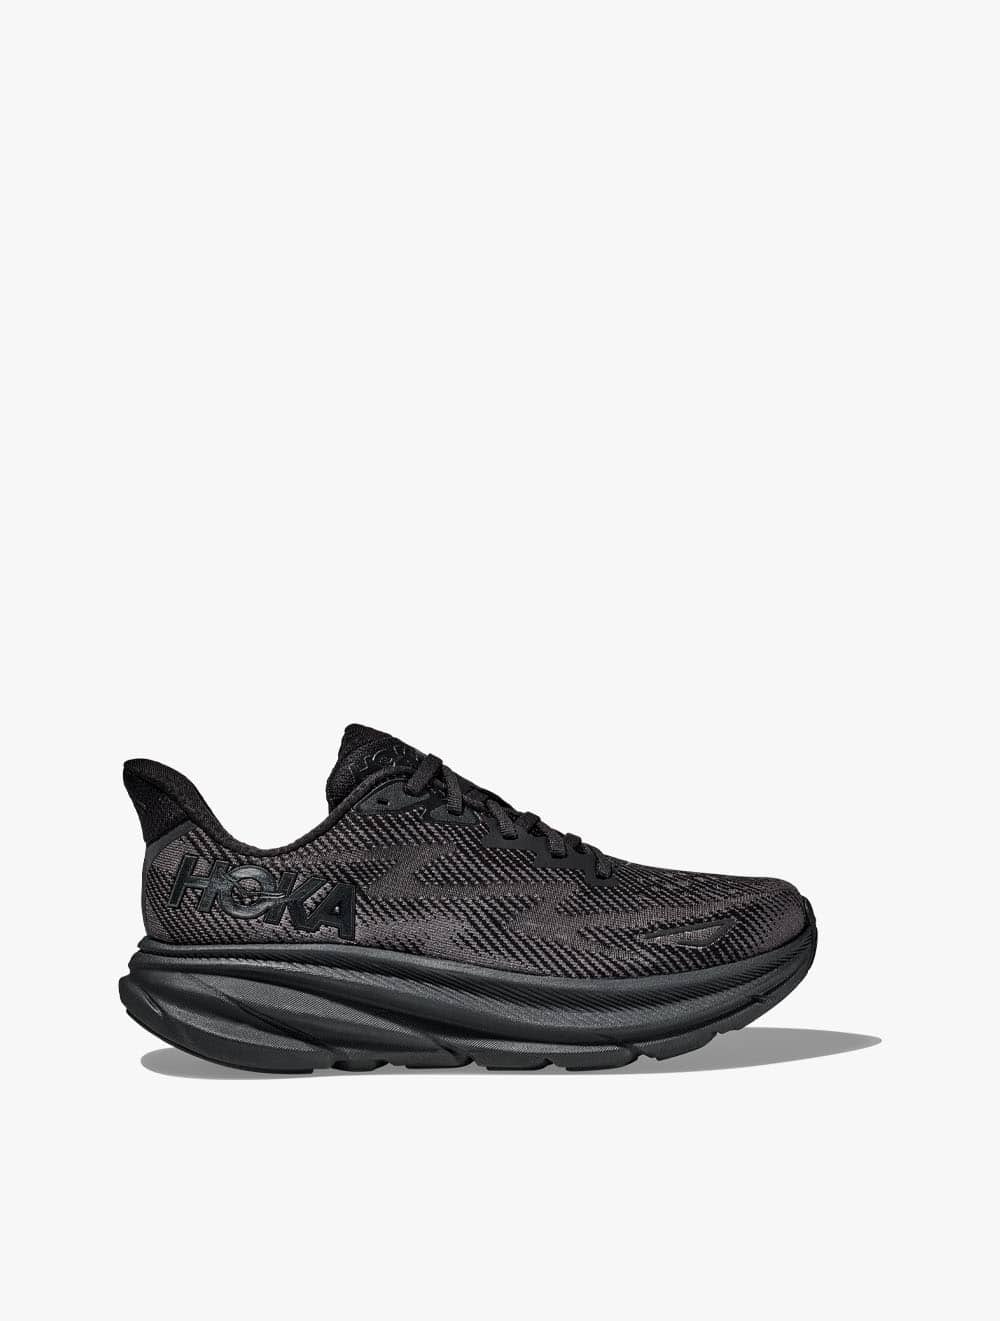 Hoka Clifton 9 Women's Running Shoes - Black/Black